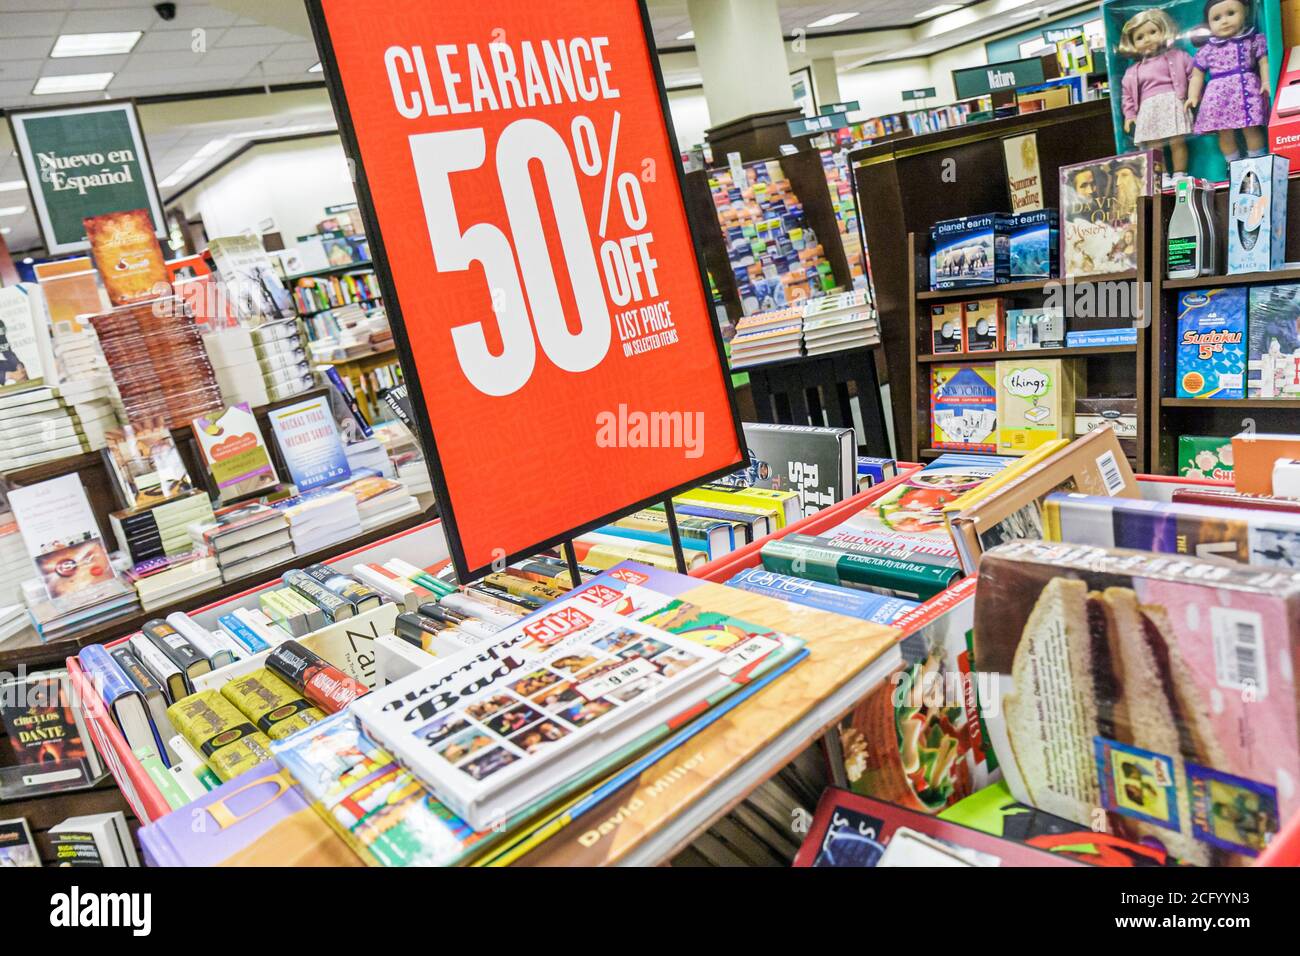 Miami Florida, Coral Gables Barnes & Noble Buchhandlung, Buchabschlusszeichen 50 % Rabatt auf ermäßigten Verkauf, Werbeaktionen zum halben Preis Stockfoto